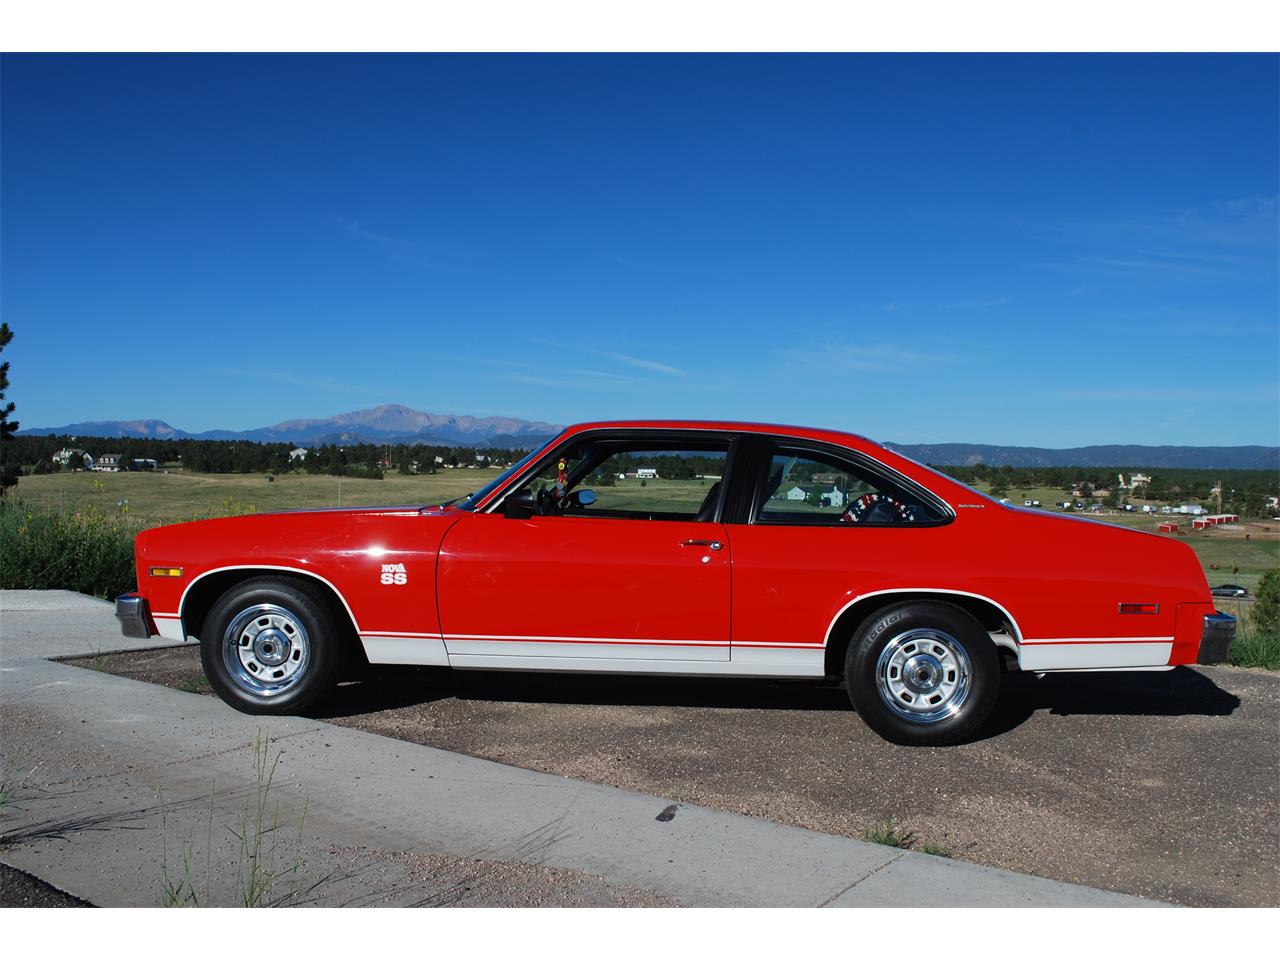 For Sale: 1975 Chevrolet Nova SS in Colorado Springs, Colorado for sale in Colorado Springs, CO